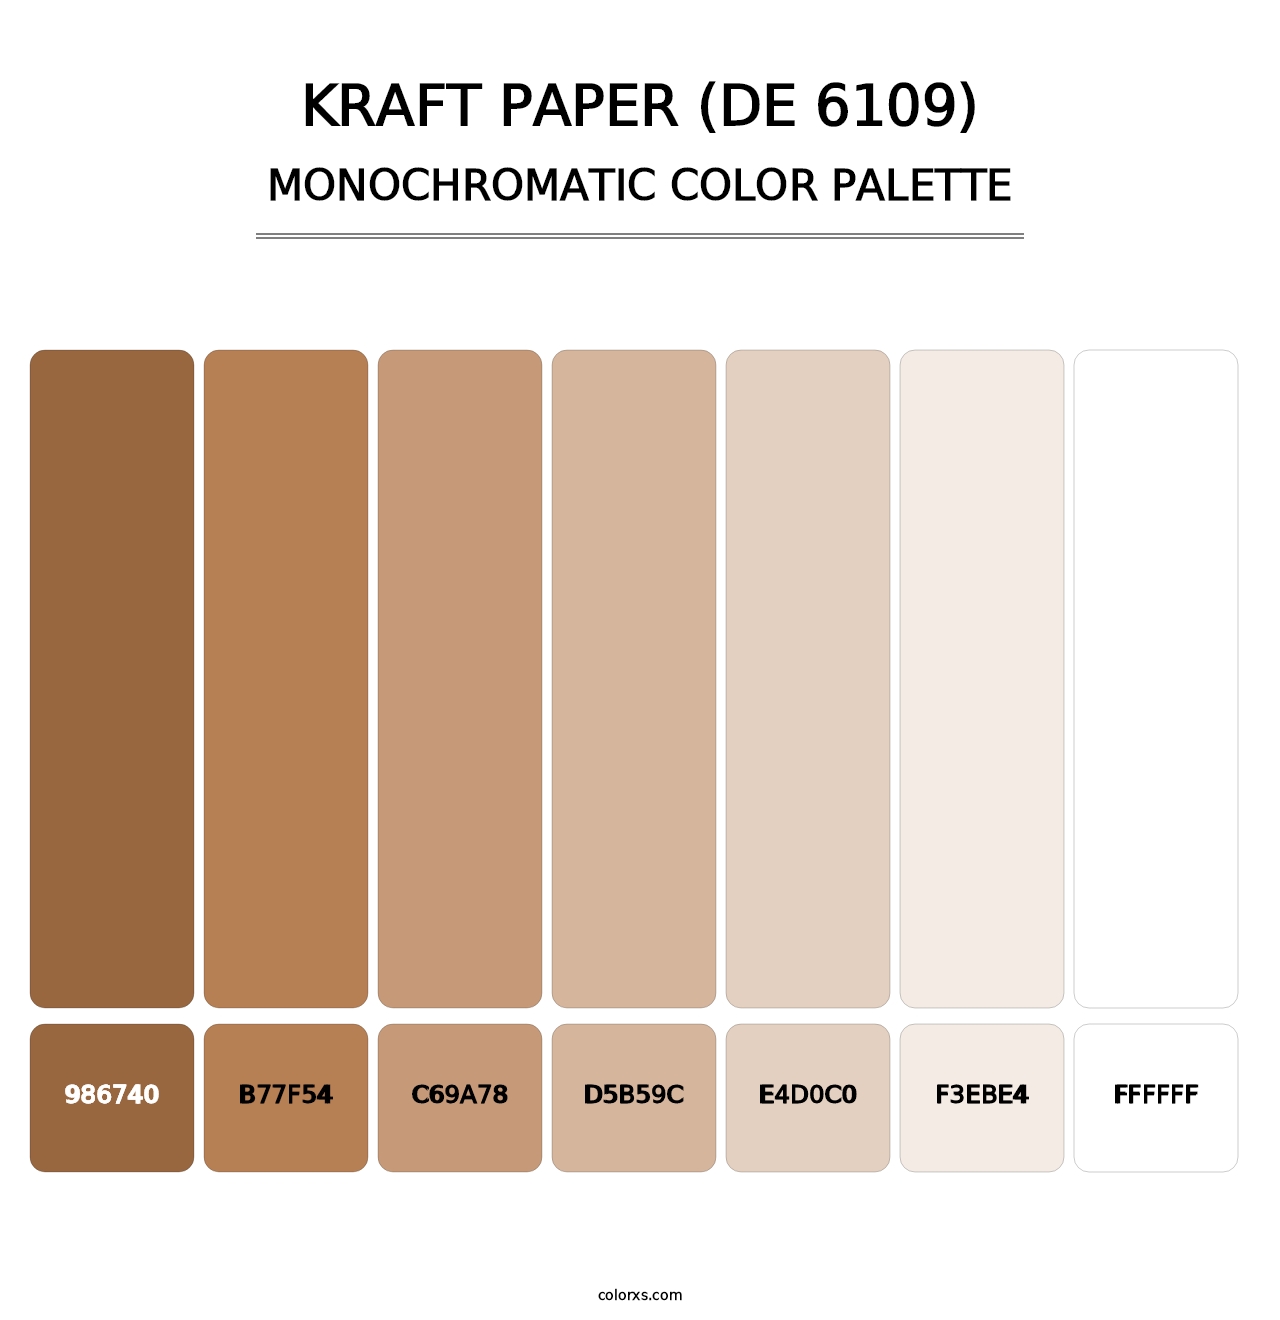 Kraft Paper (DE 6109) - Monochromatic Color Palette